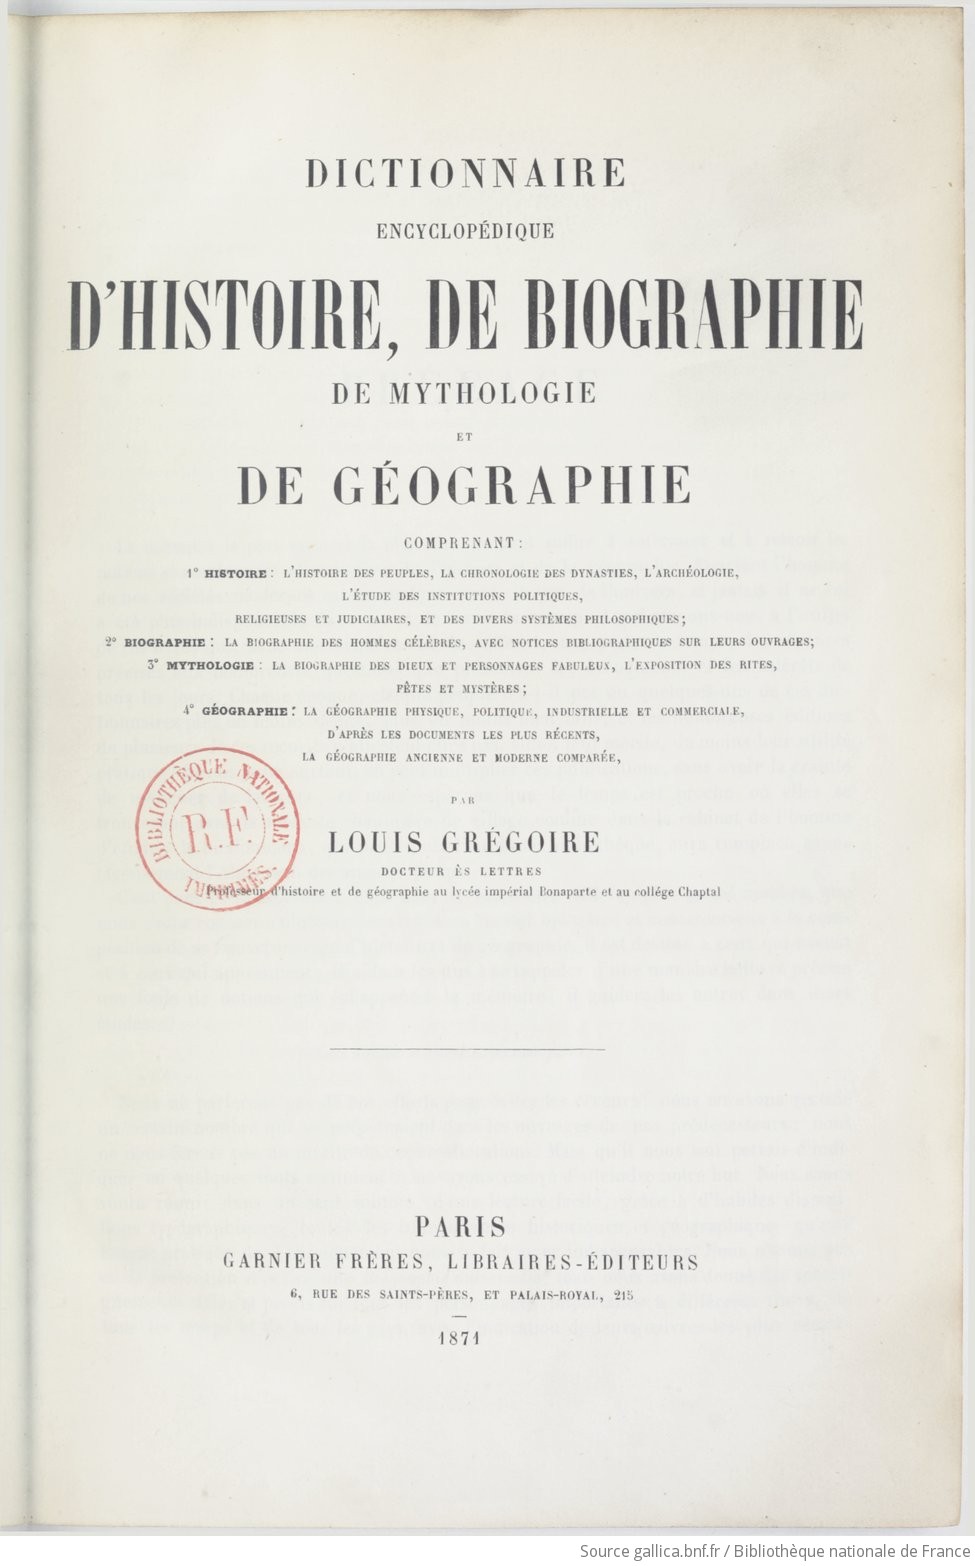 Dictionnaire encyclopédique d'histoire, de biographie, de mythologie et de géographie.... A-J / par Louis Grégoire,..